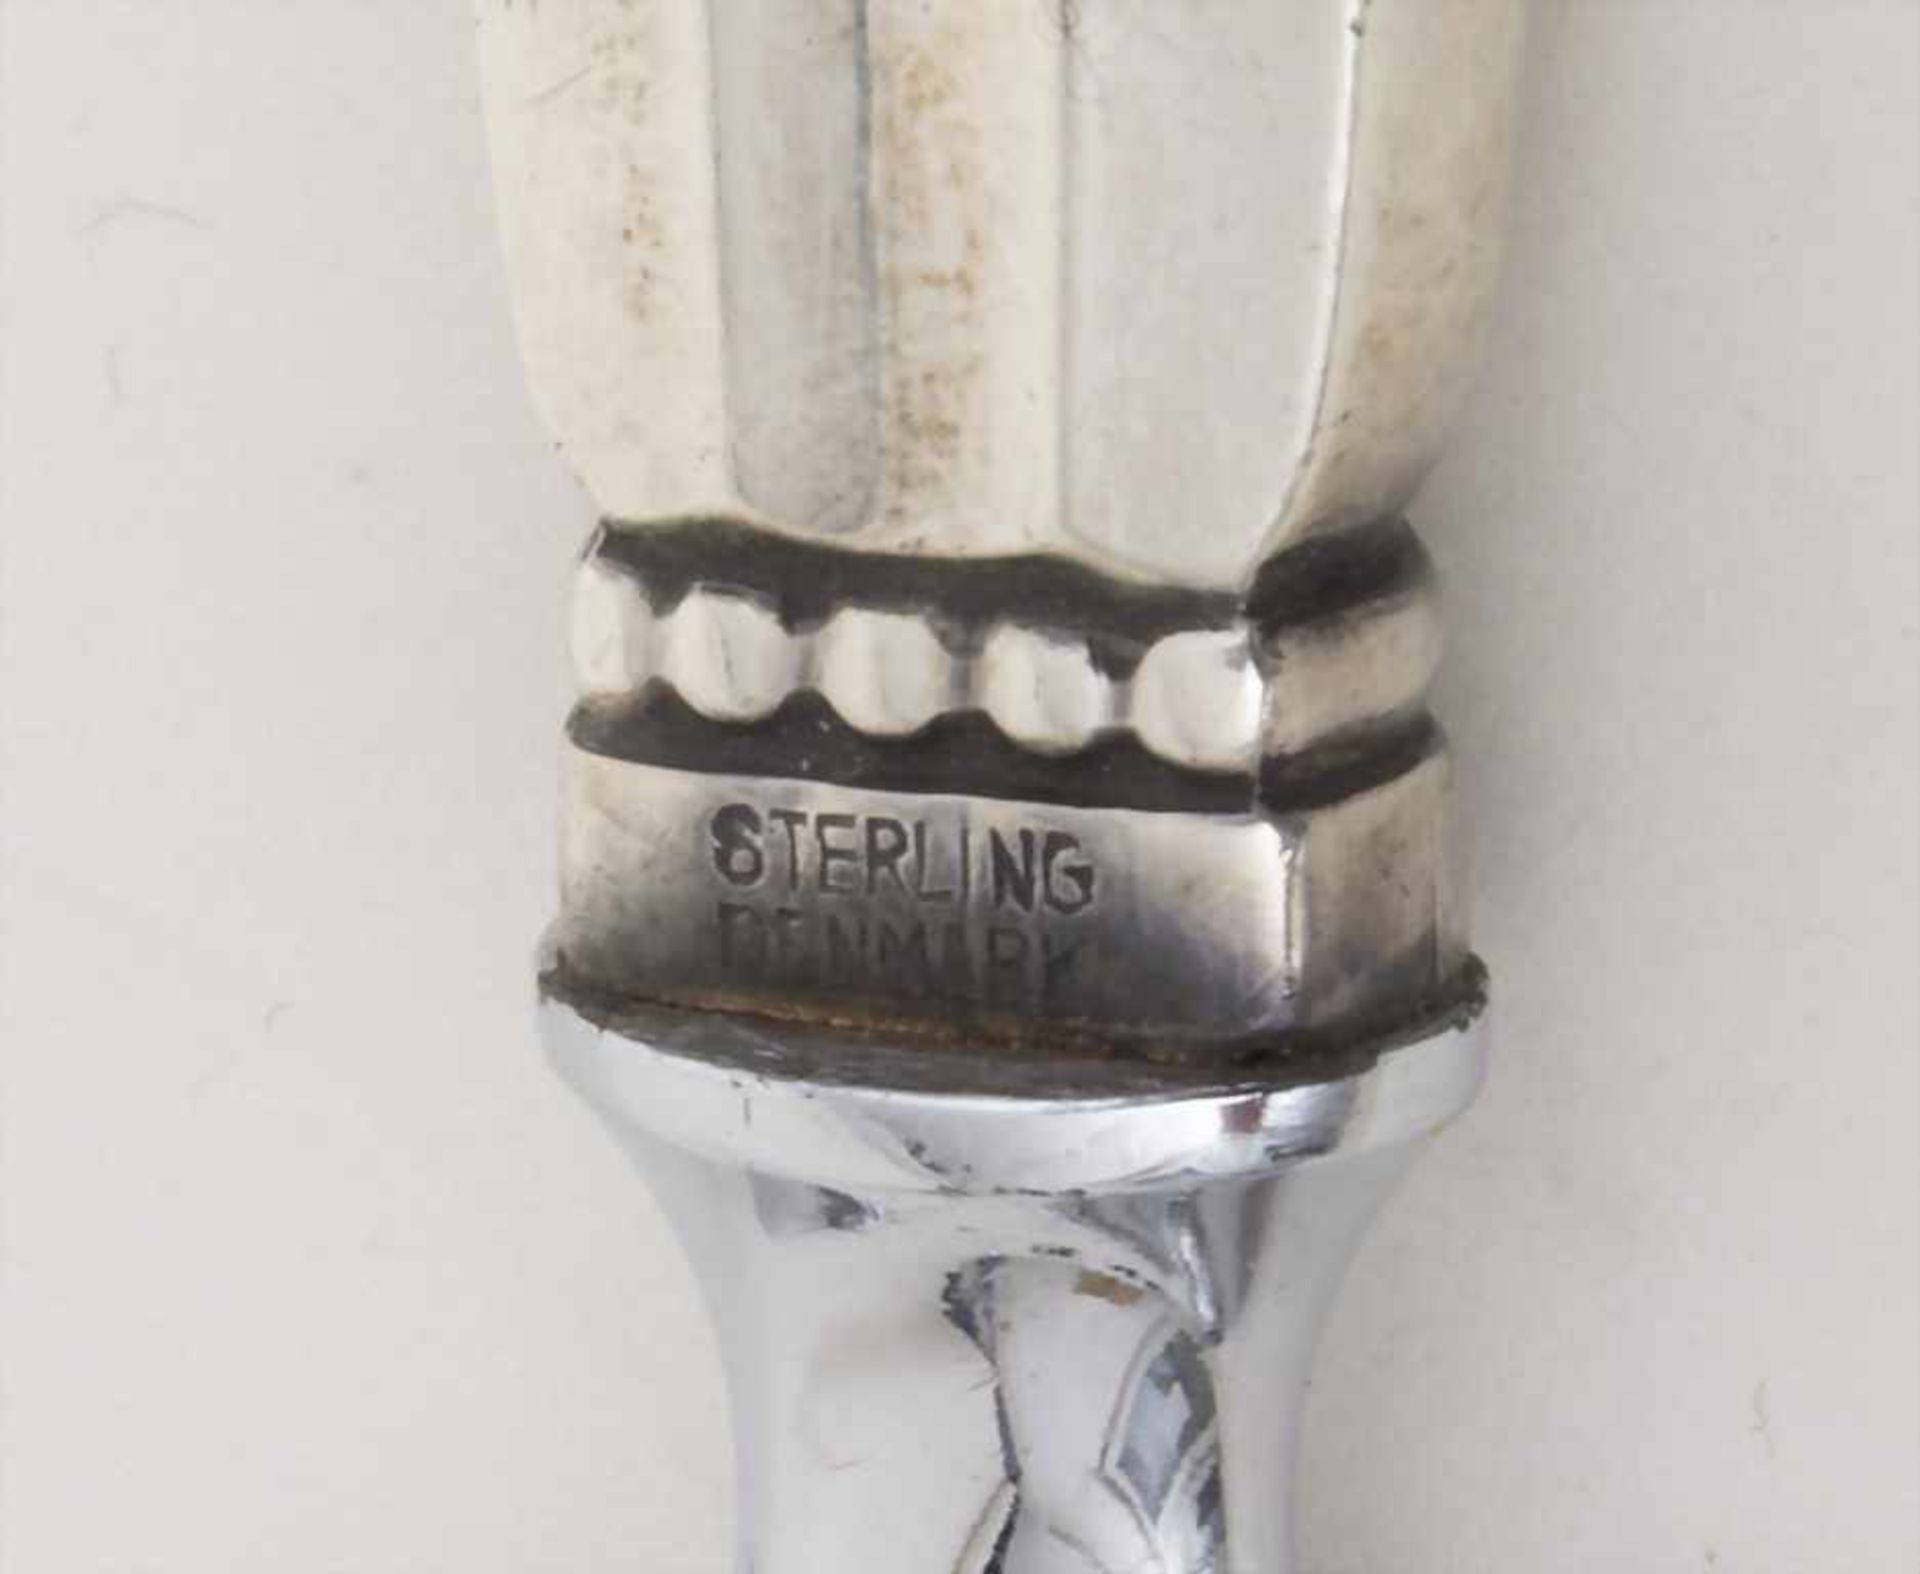 Flaschenöffner 'Acorn' / A bottle opener 'Acorn', Georg Jensen, Kopenhagen / Copenhagen, 1933-44, - Bild 3 aus 4